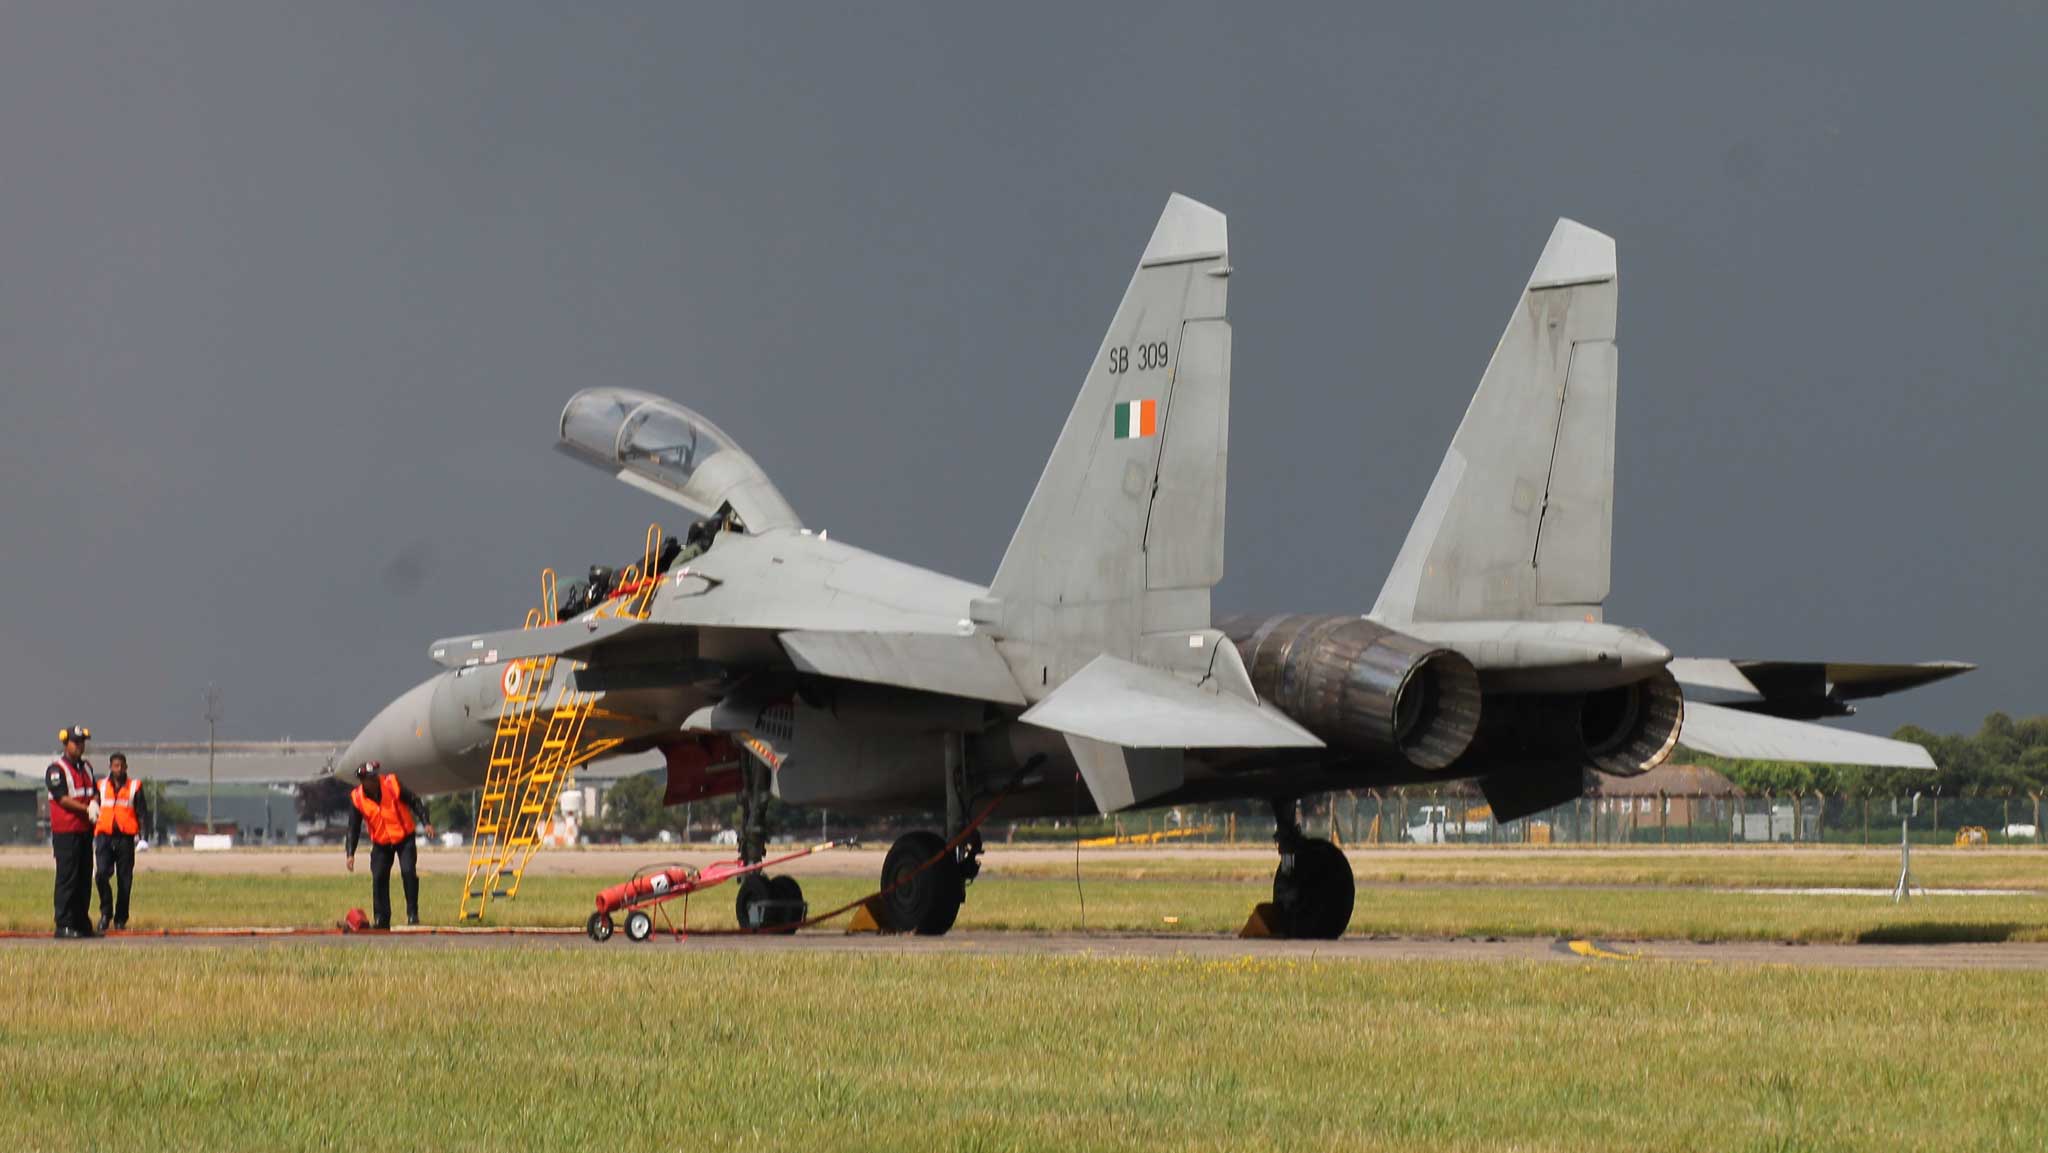 Chiến đấu cơ Su-30 Ấn Độ bắn rơi mục tiêu Pakistan xâm phạm lãnh thổ - 1